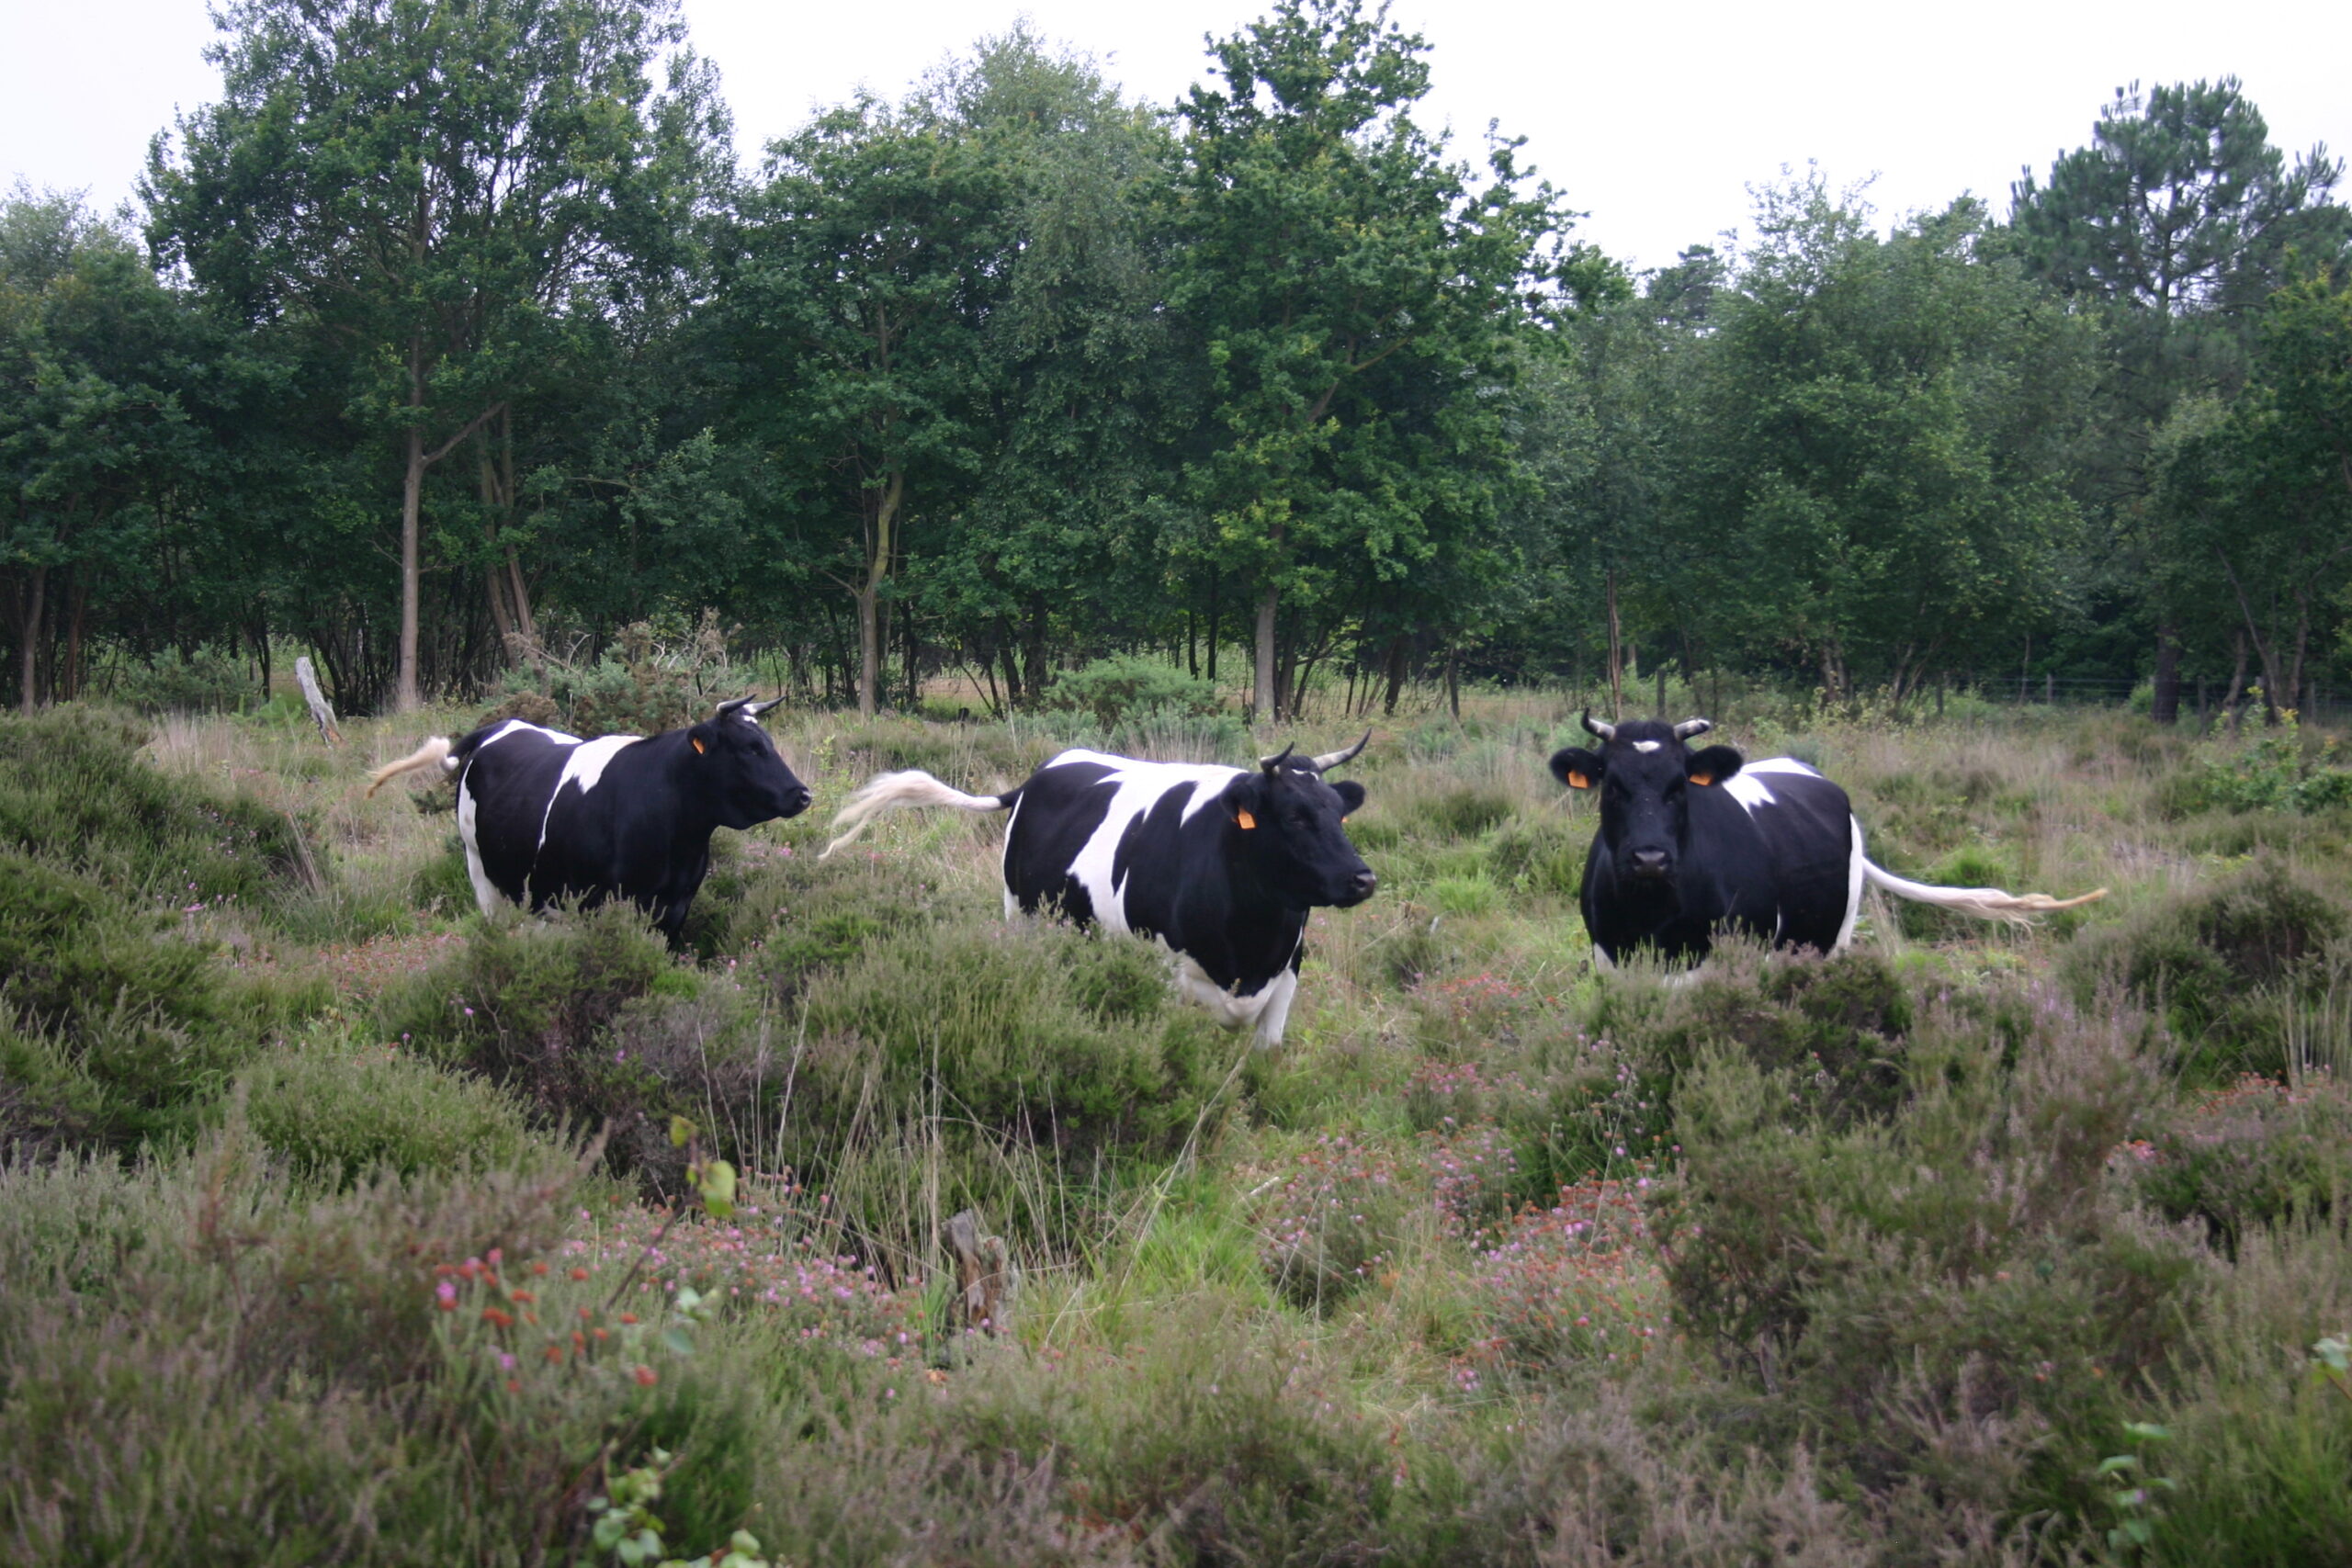 Vaches pâturant une zone humide avec des arbrisseaux